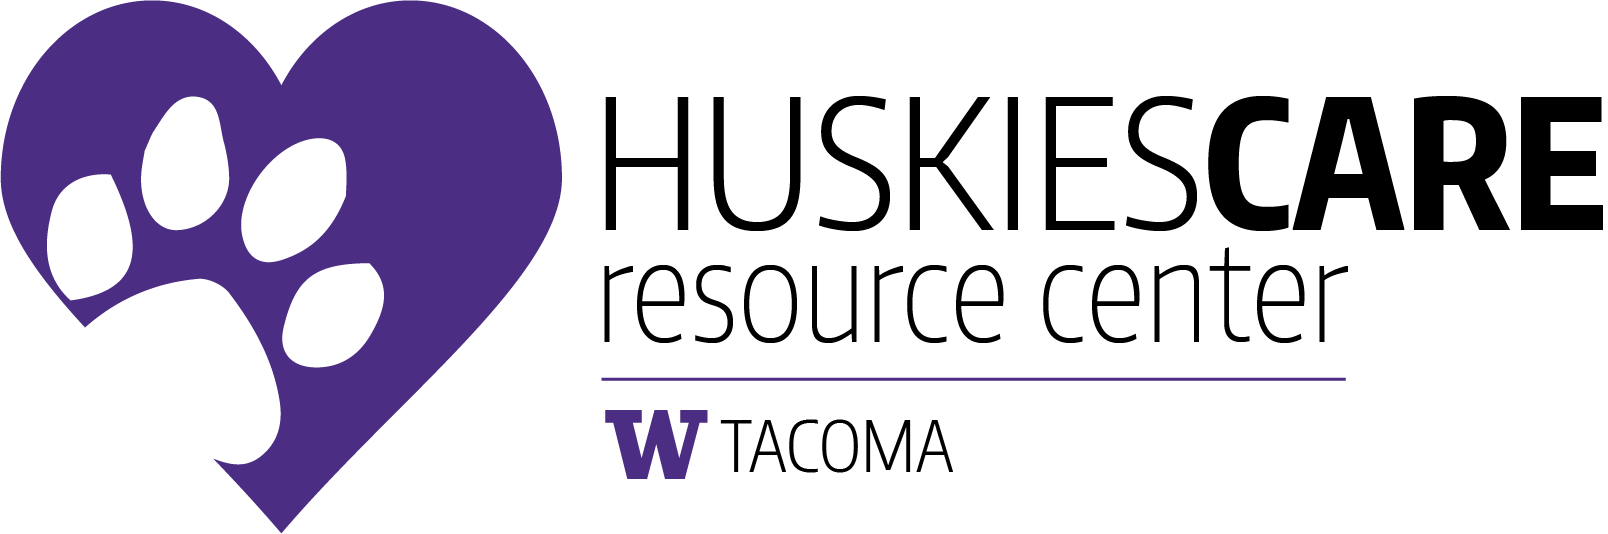 HuskiesCare logo